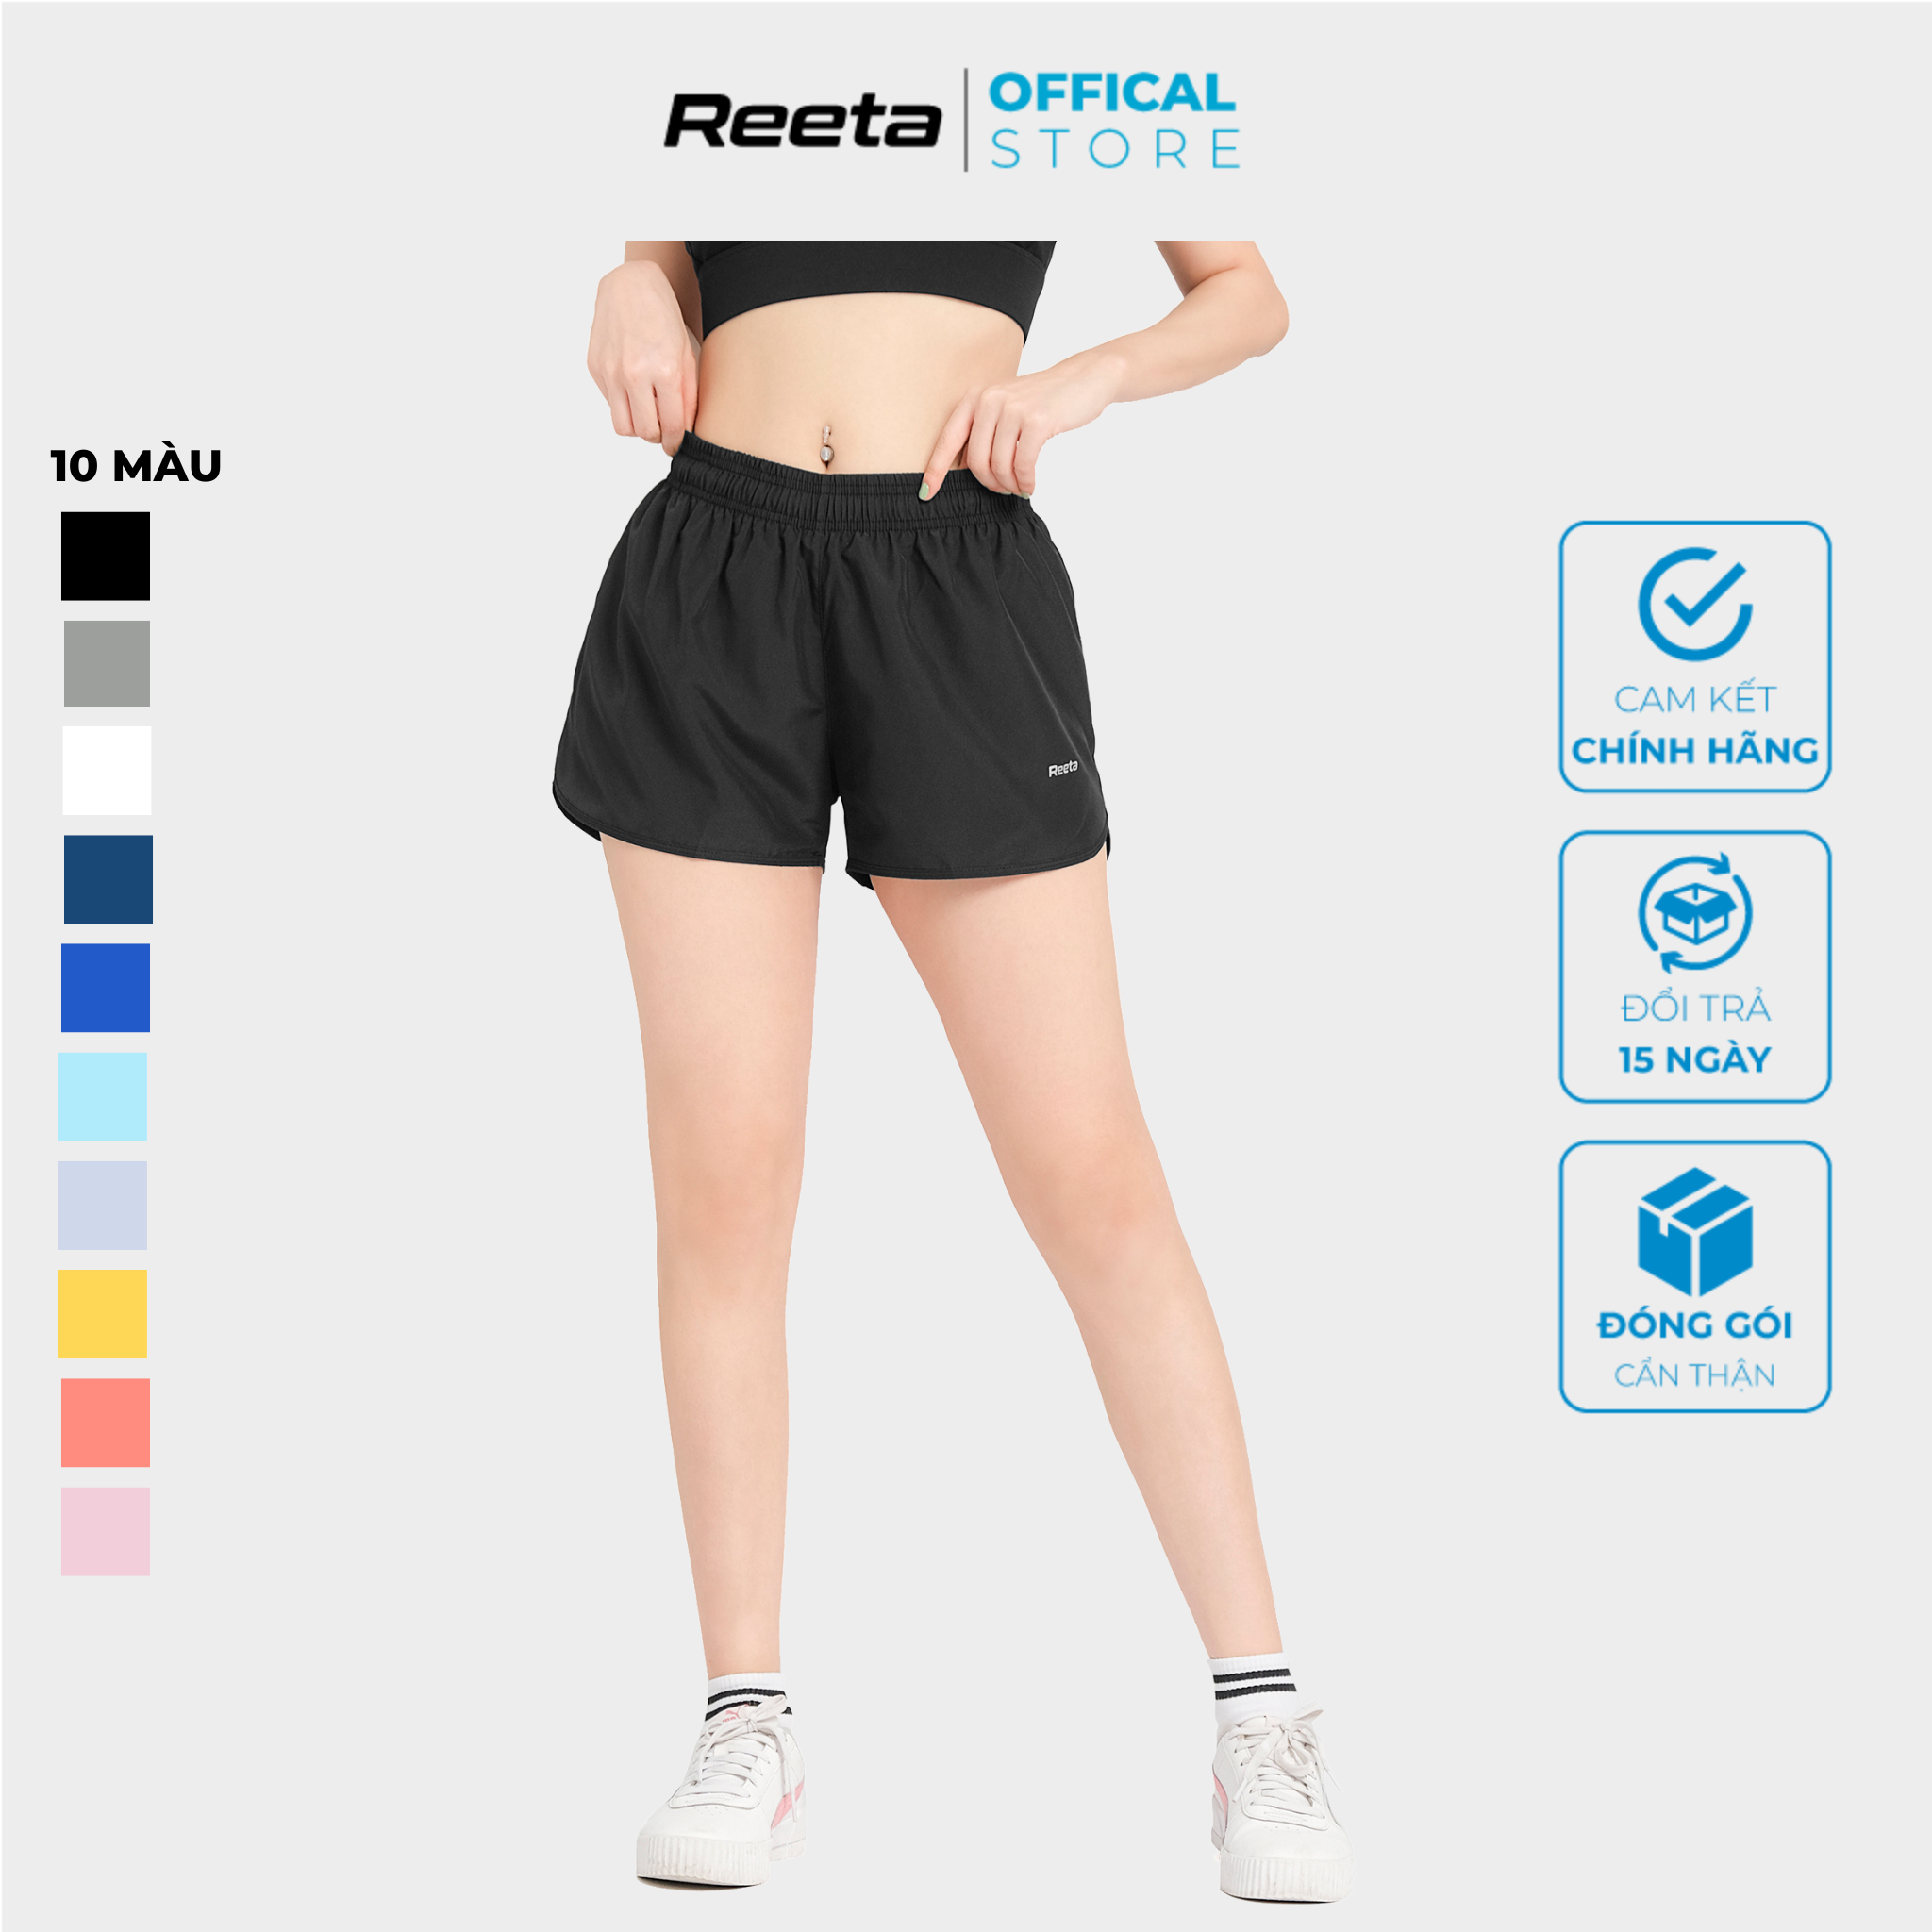 Quần short thể thao nữ REETA, lưng quần bo chun tiện lợi, form thể thao năng động khoe trọn vóc dáng - A1990